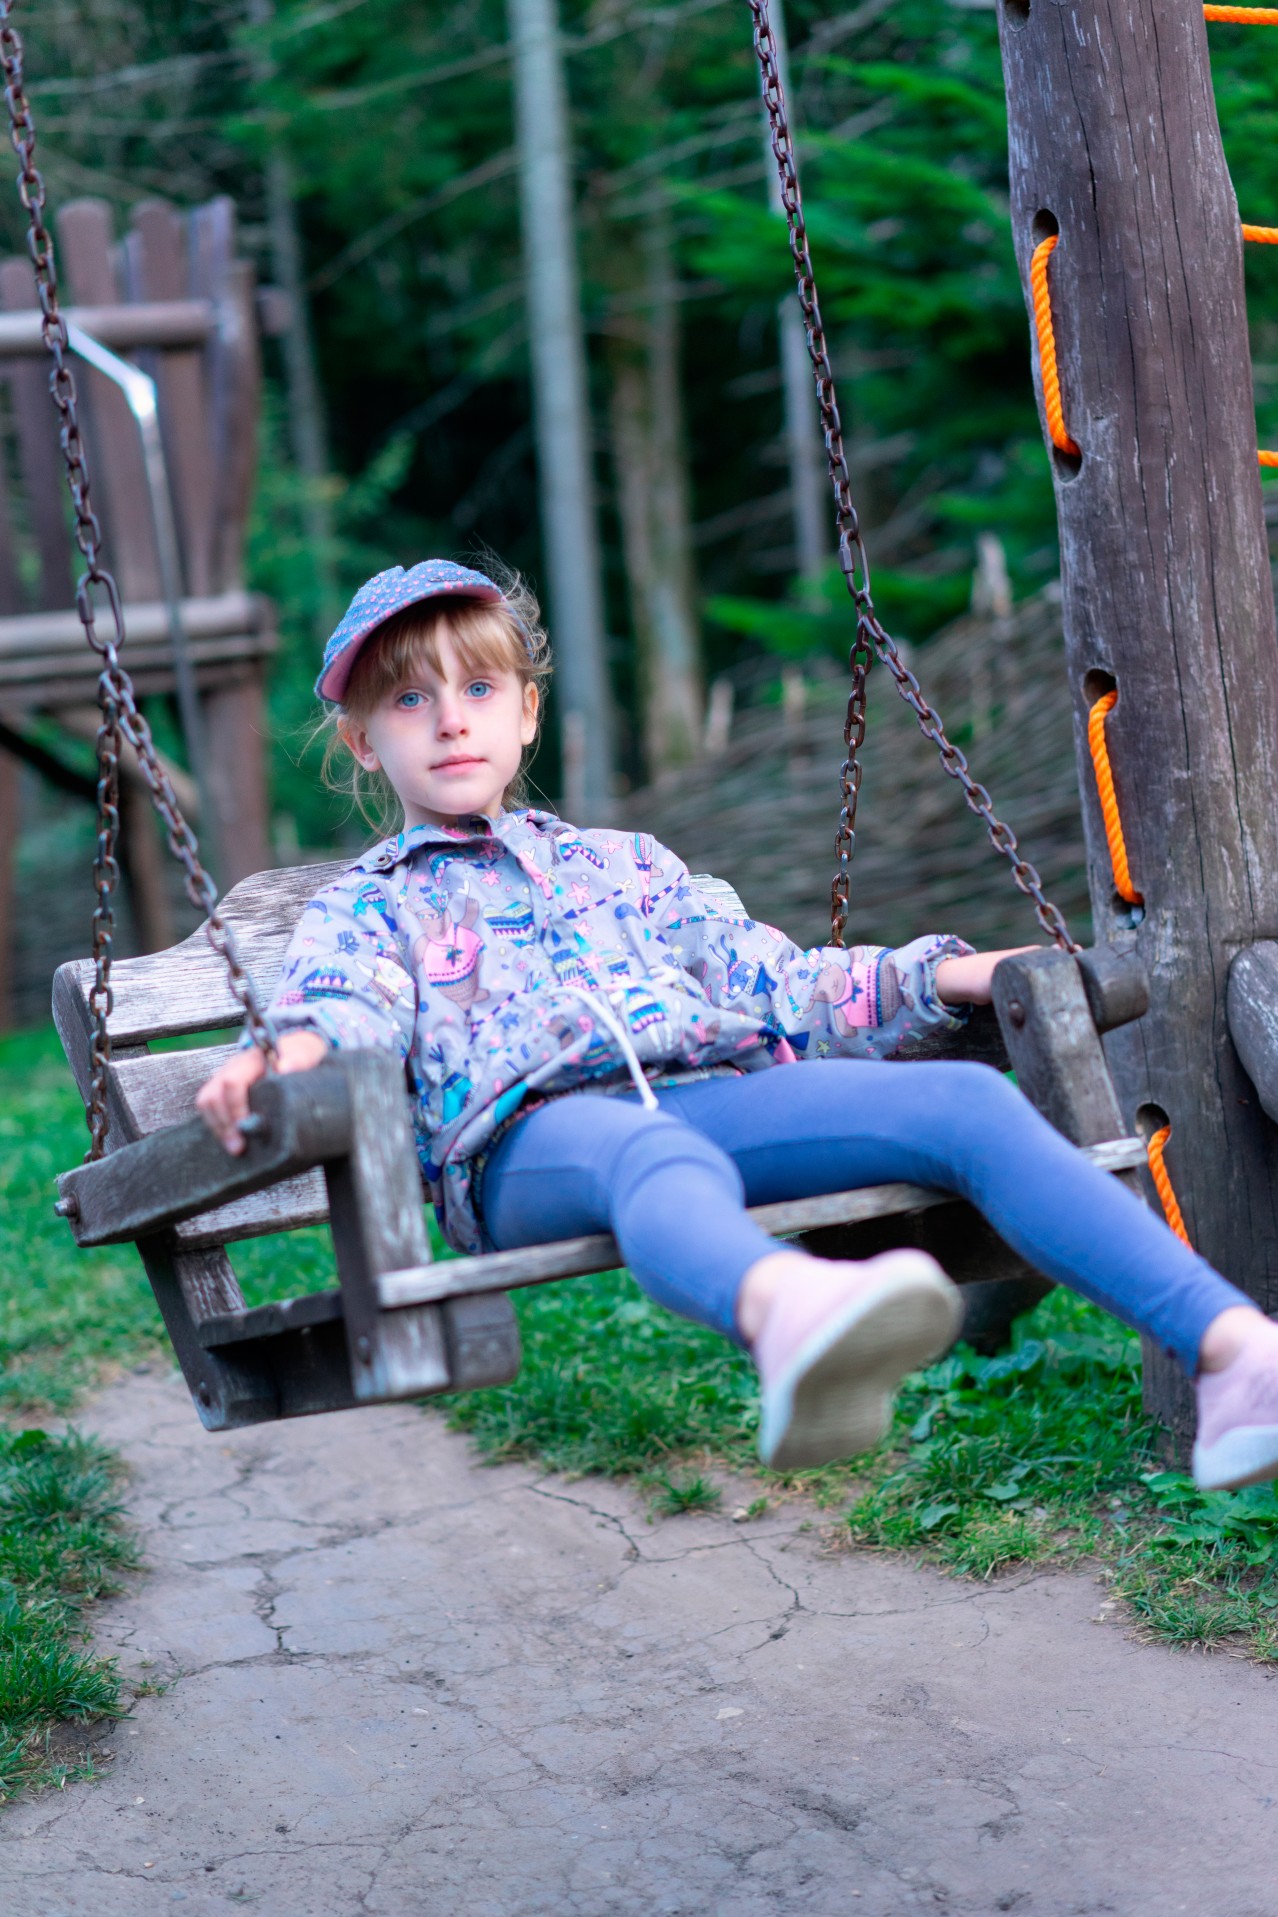 Little girl on the wooden swing